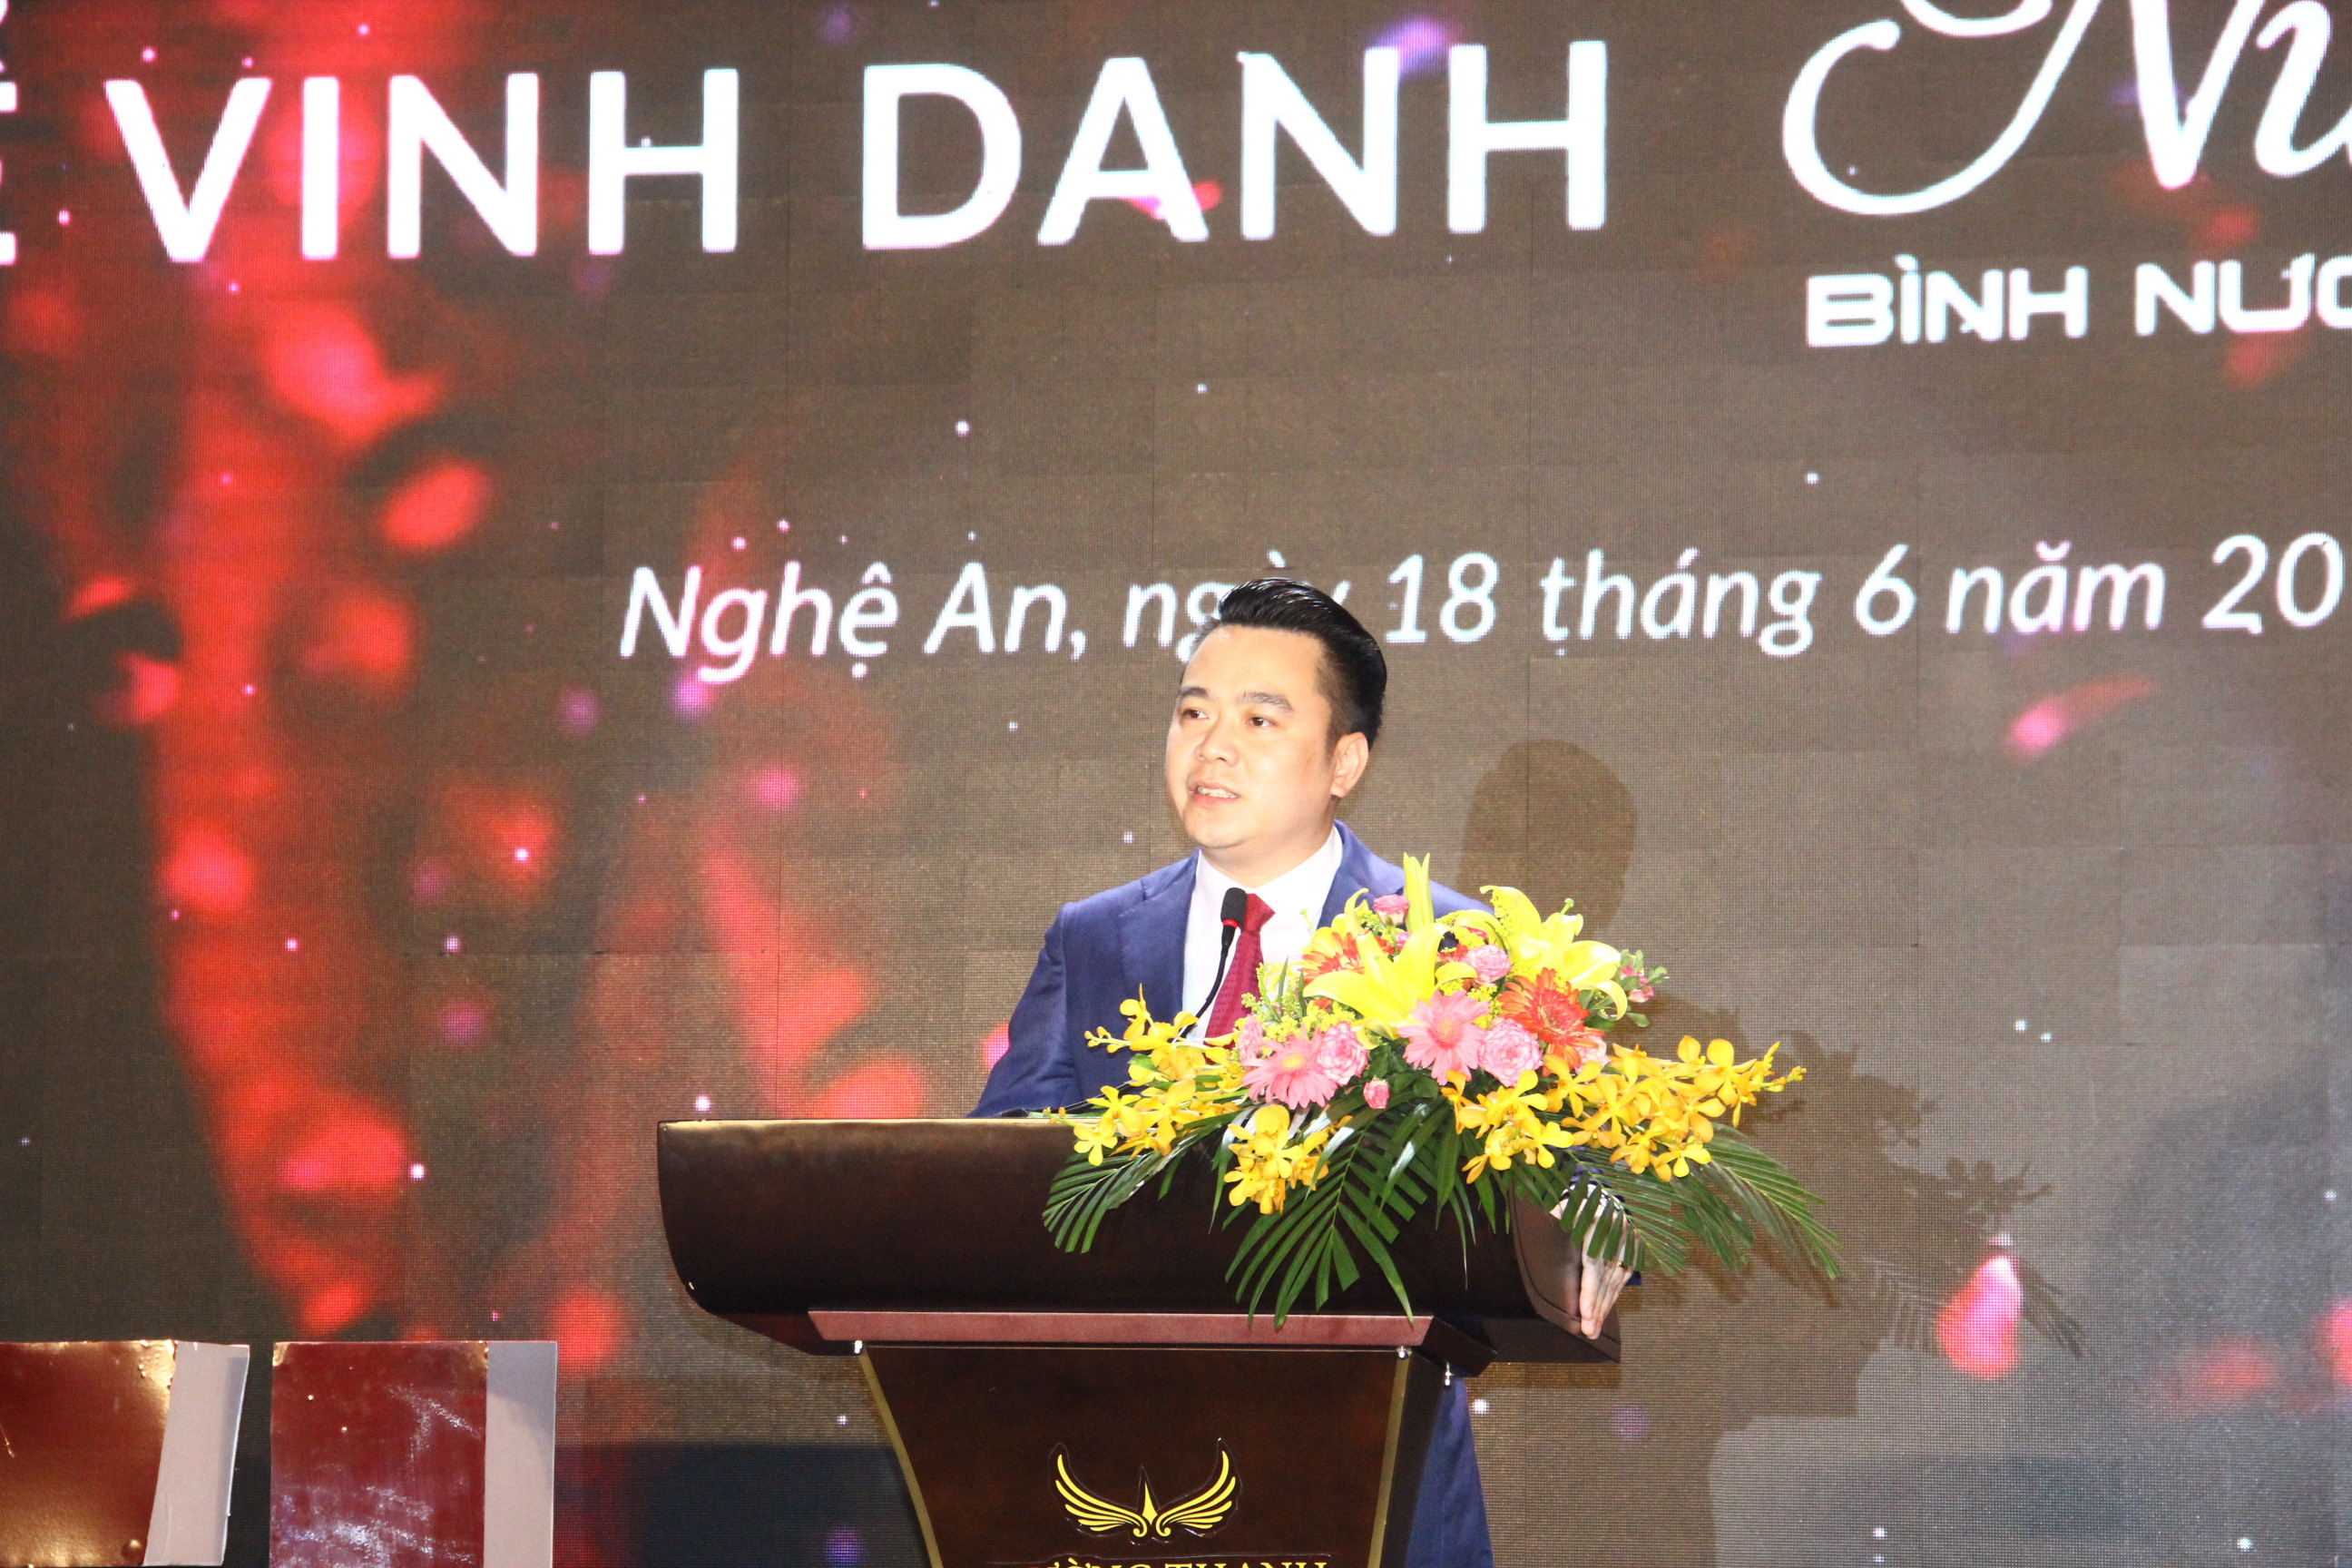  Ông Tổng giám đốc Tập đoàn Tân Á Đại Thành phát biểu tại sự kiện. Ảnh Hoàng Vĩnh.